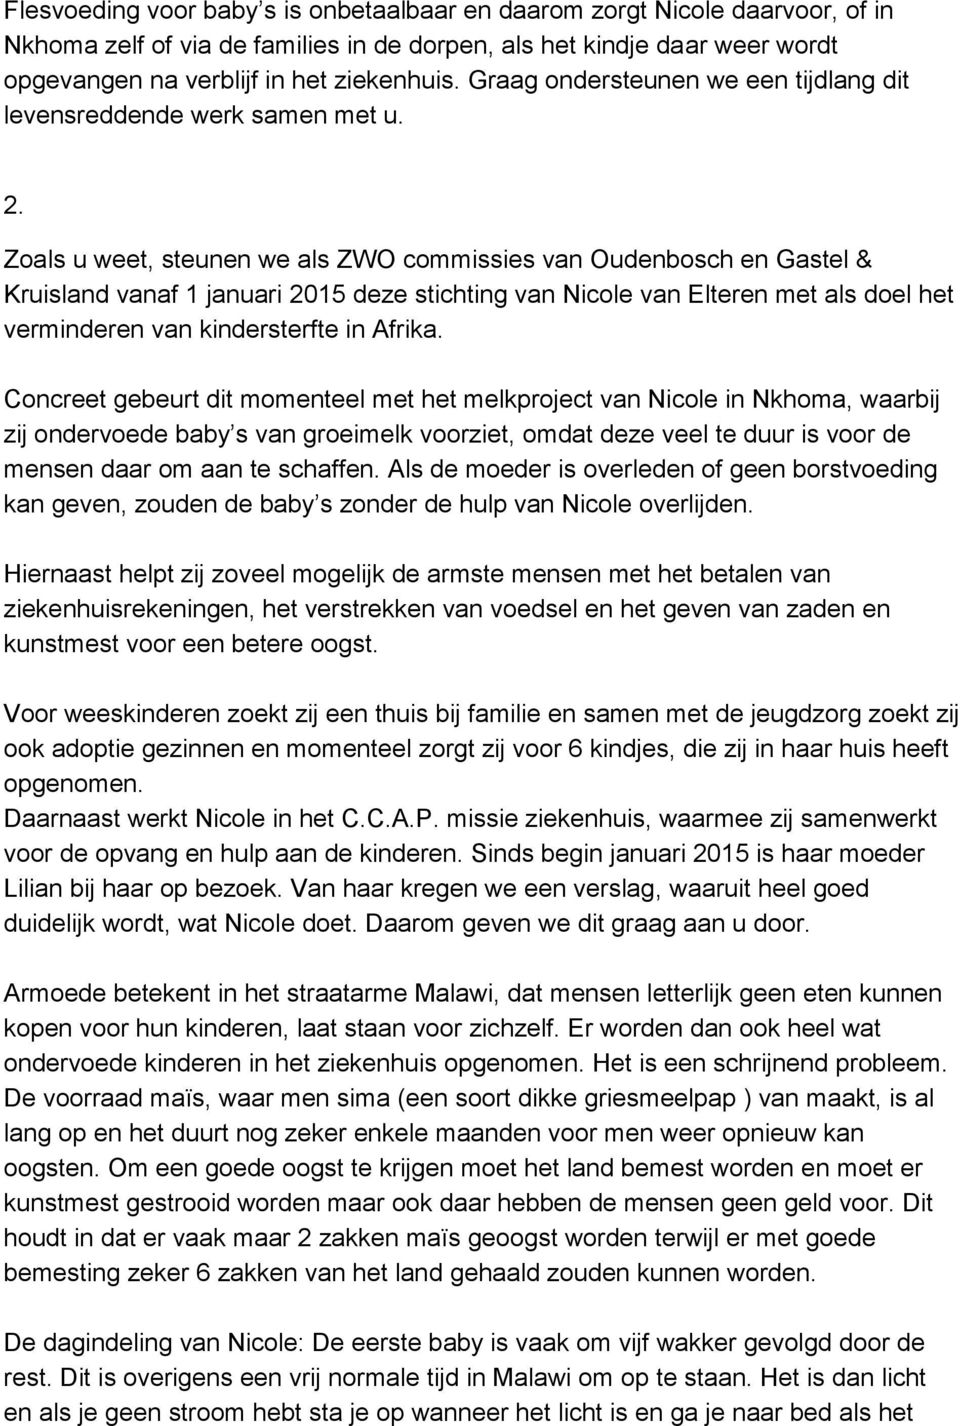 Zoals u weet, steunen we als ZWO commissies van Oudenbosch en Gastel & Kruisland vanaf 1 januari 2015 deze stichting van Nicole van Elteren met als doel het verminderen van kindersterfte in Afrika.